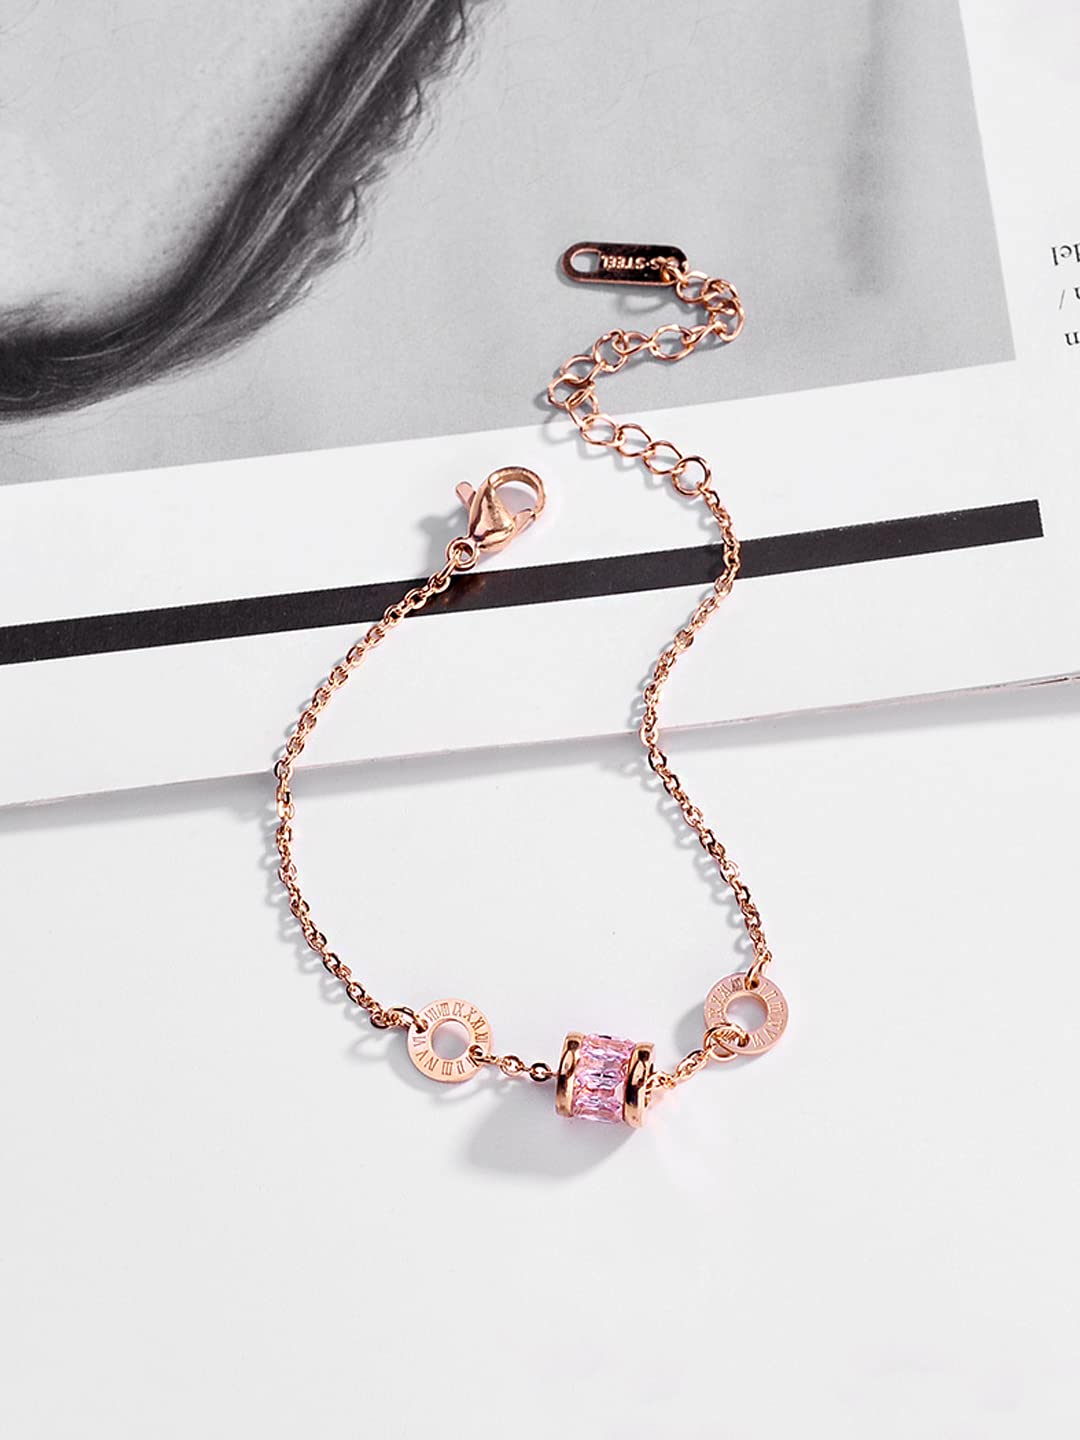 Colorful American Diamond Bracelet - Gift for Girlfriend - Caroline  Multicolor Crystal Chain Bracelet by Blingivne – Blingvine